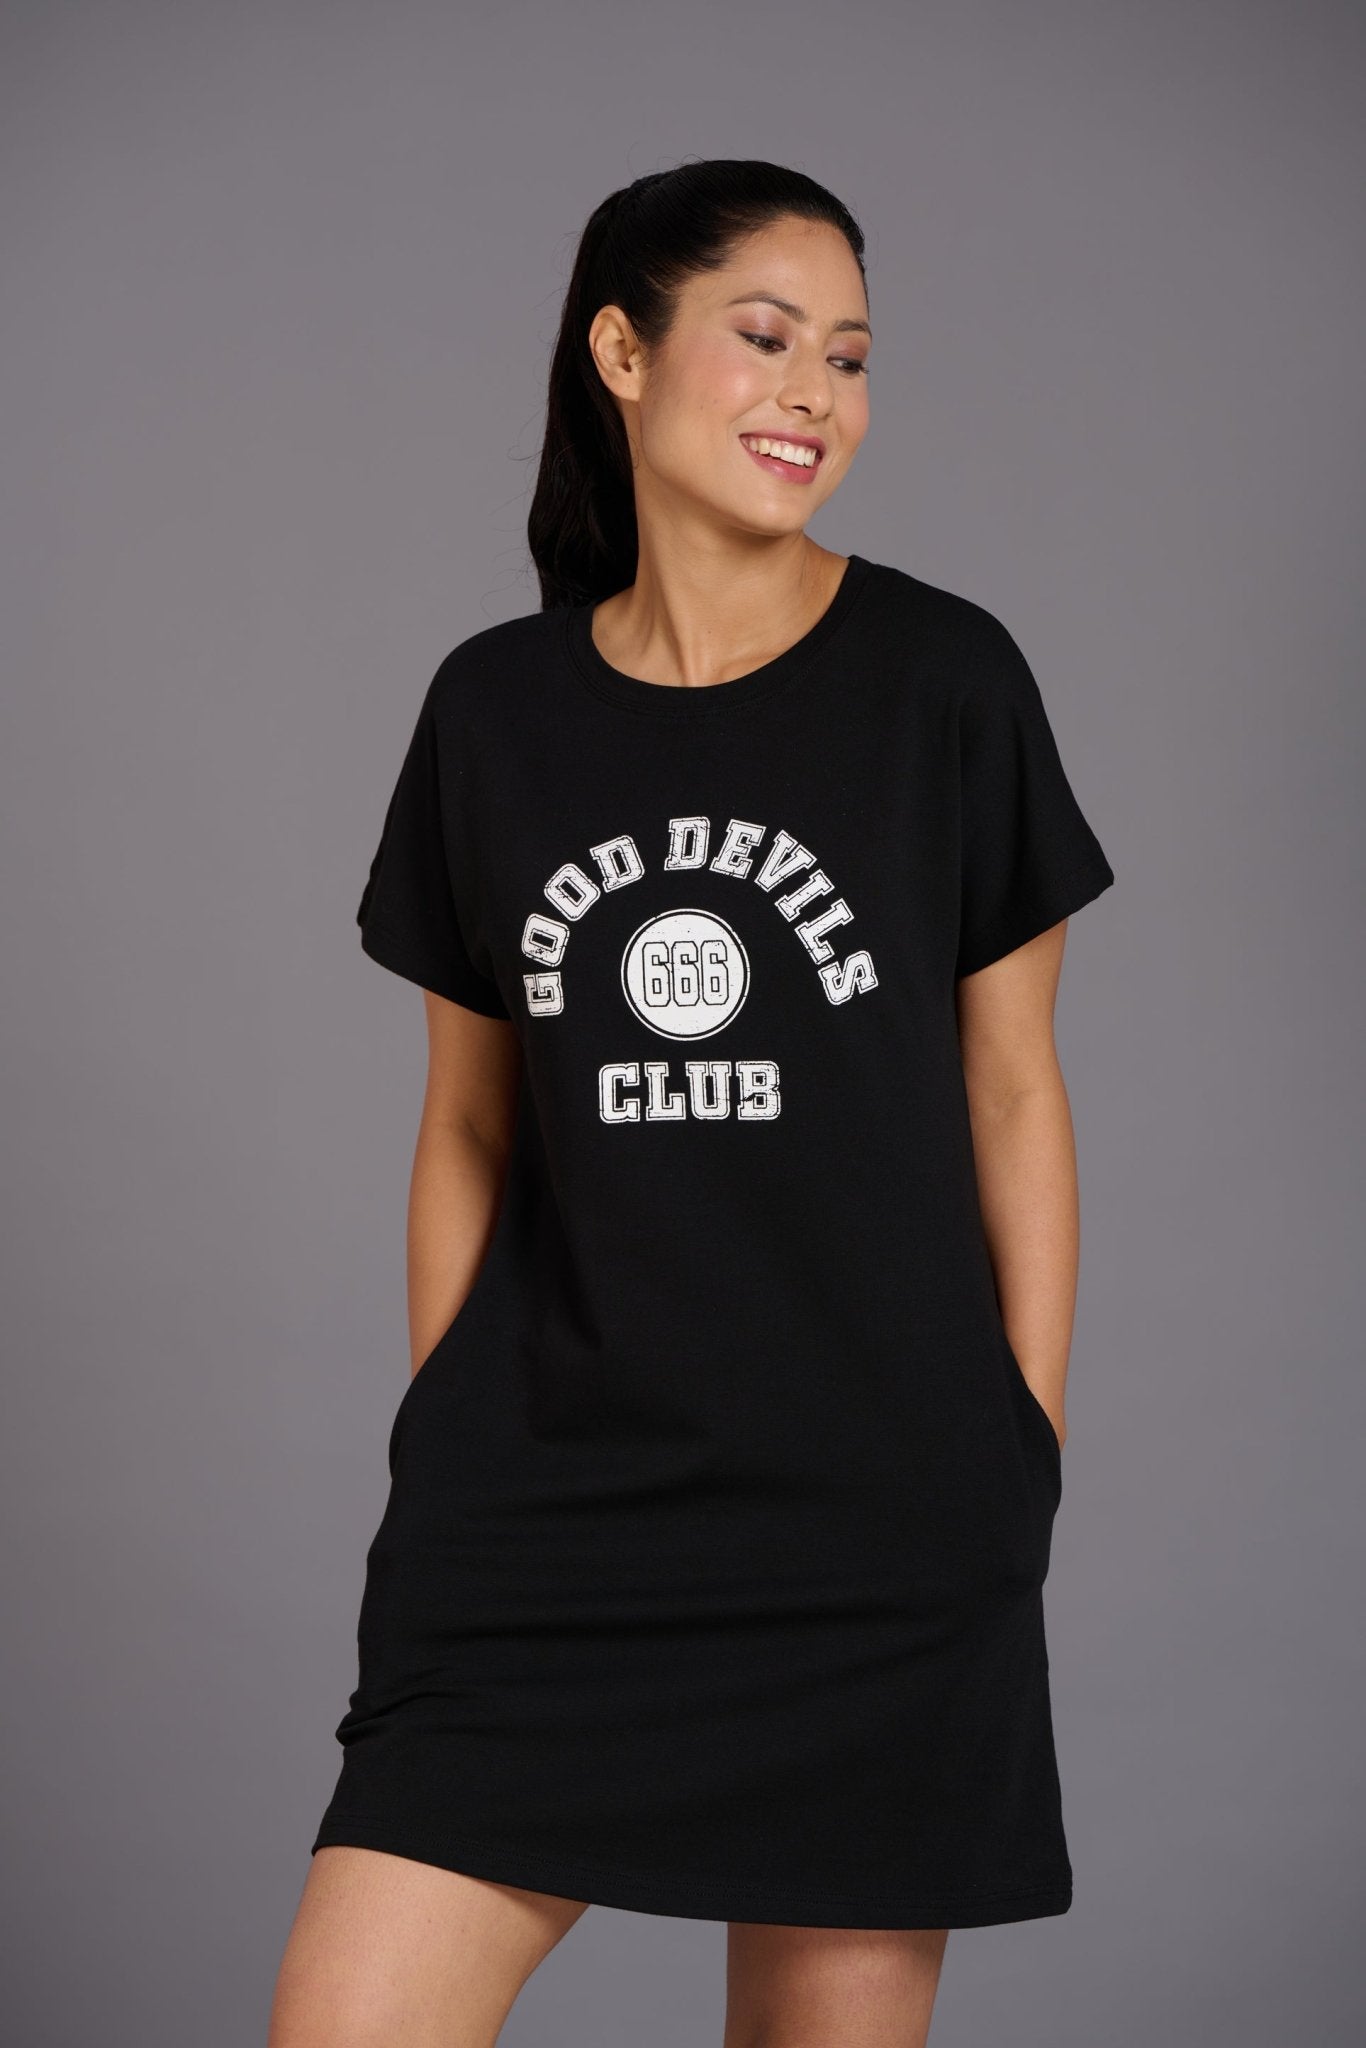 Good Devil Club Black Dress for Women - Go Devil